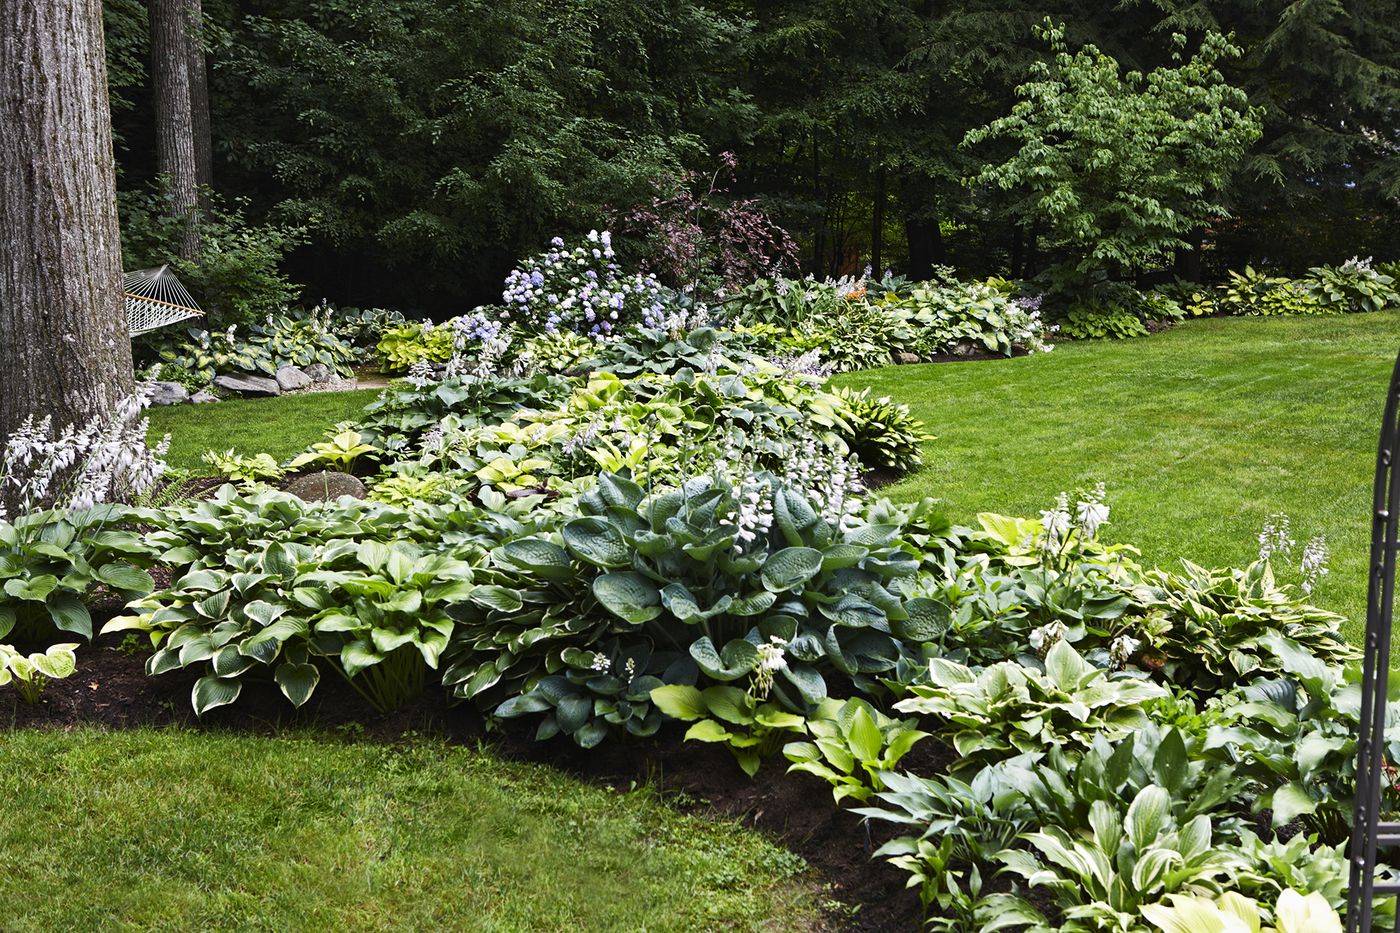 A Modern Less Rigid Parterreknot Garden